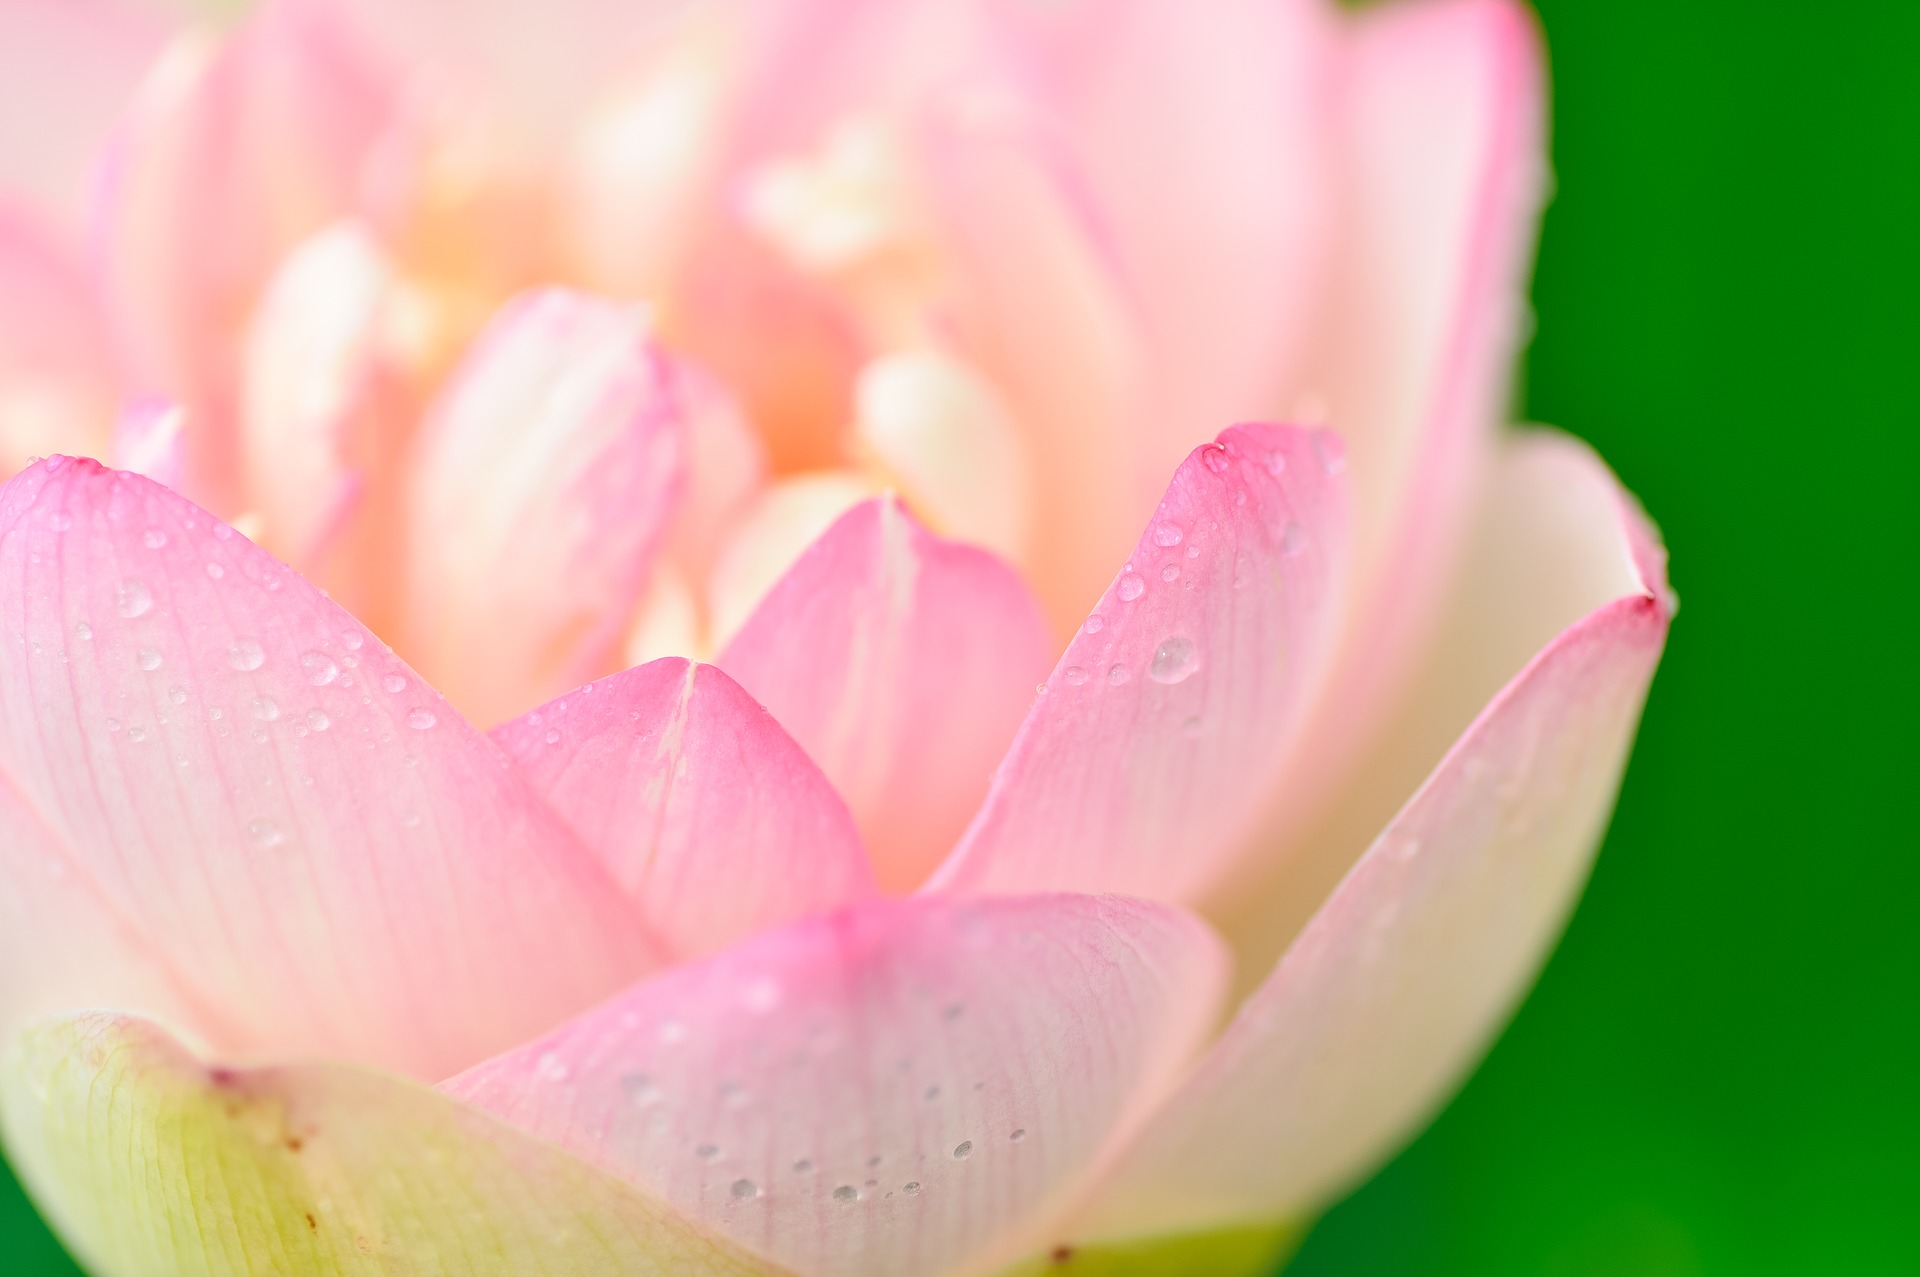 Hoa sen: Hoa sen từ lâu đã trở thành biểu tượng của vẻ đẹp thanh nhã và tinh tế của văn hóa Việt Nam. Bạn có muốn tìm hiểu thêm về loài hoa trầm tích này không? Đến với chúng tôi và tận hưởng vẻ đẹp tuyệt vời của hoa sen được mang đến qua các tác phẩm nghệ thuật.